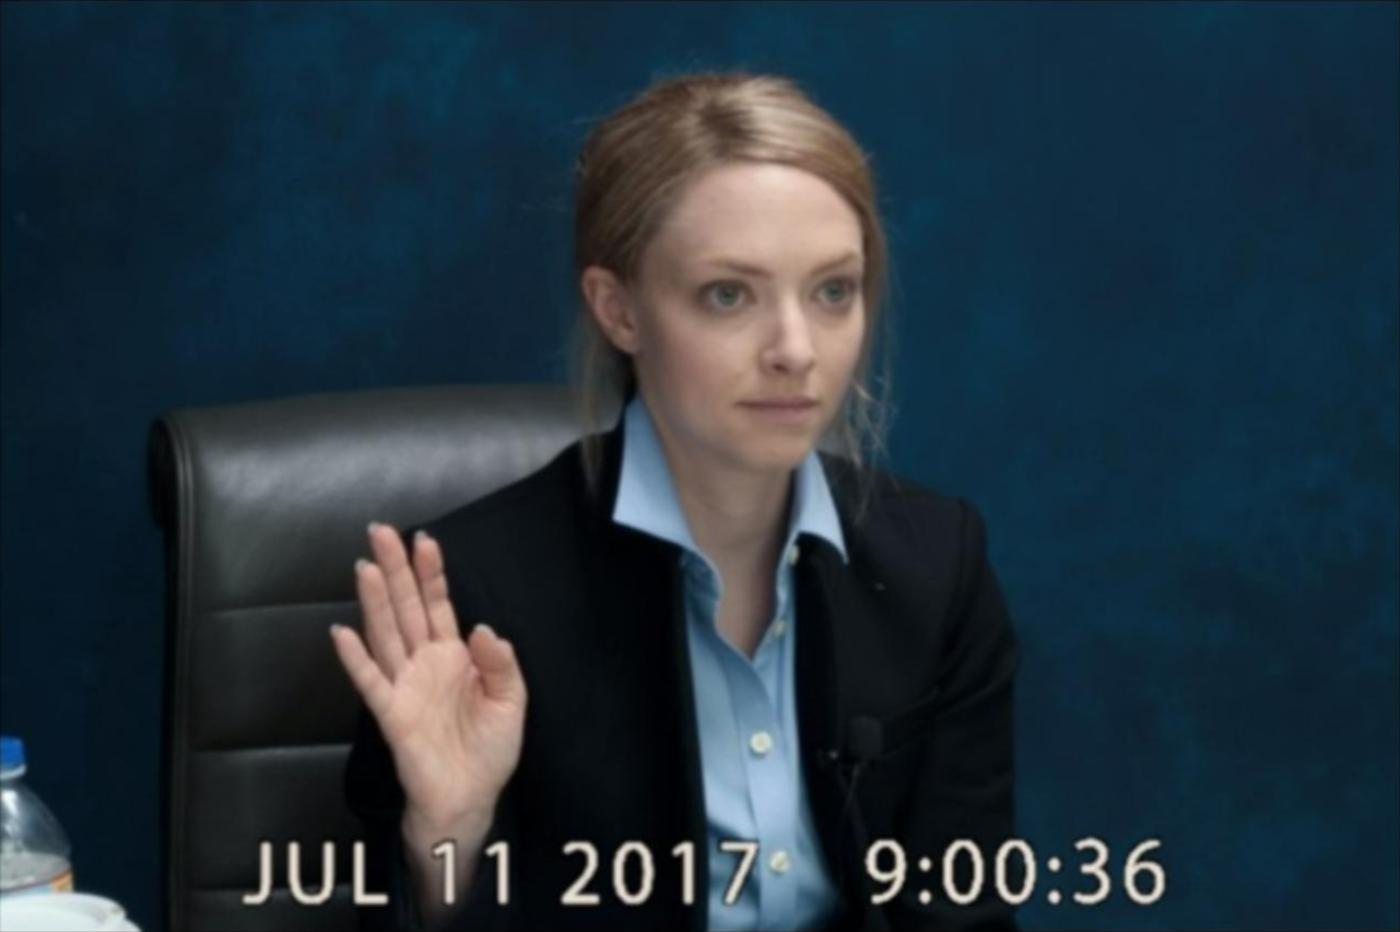 Capture d'écran de la série The Dropout montrant Elizabeth Holmes à son témoignage devant la justice